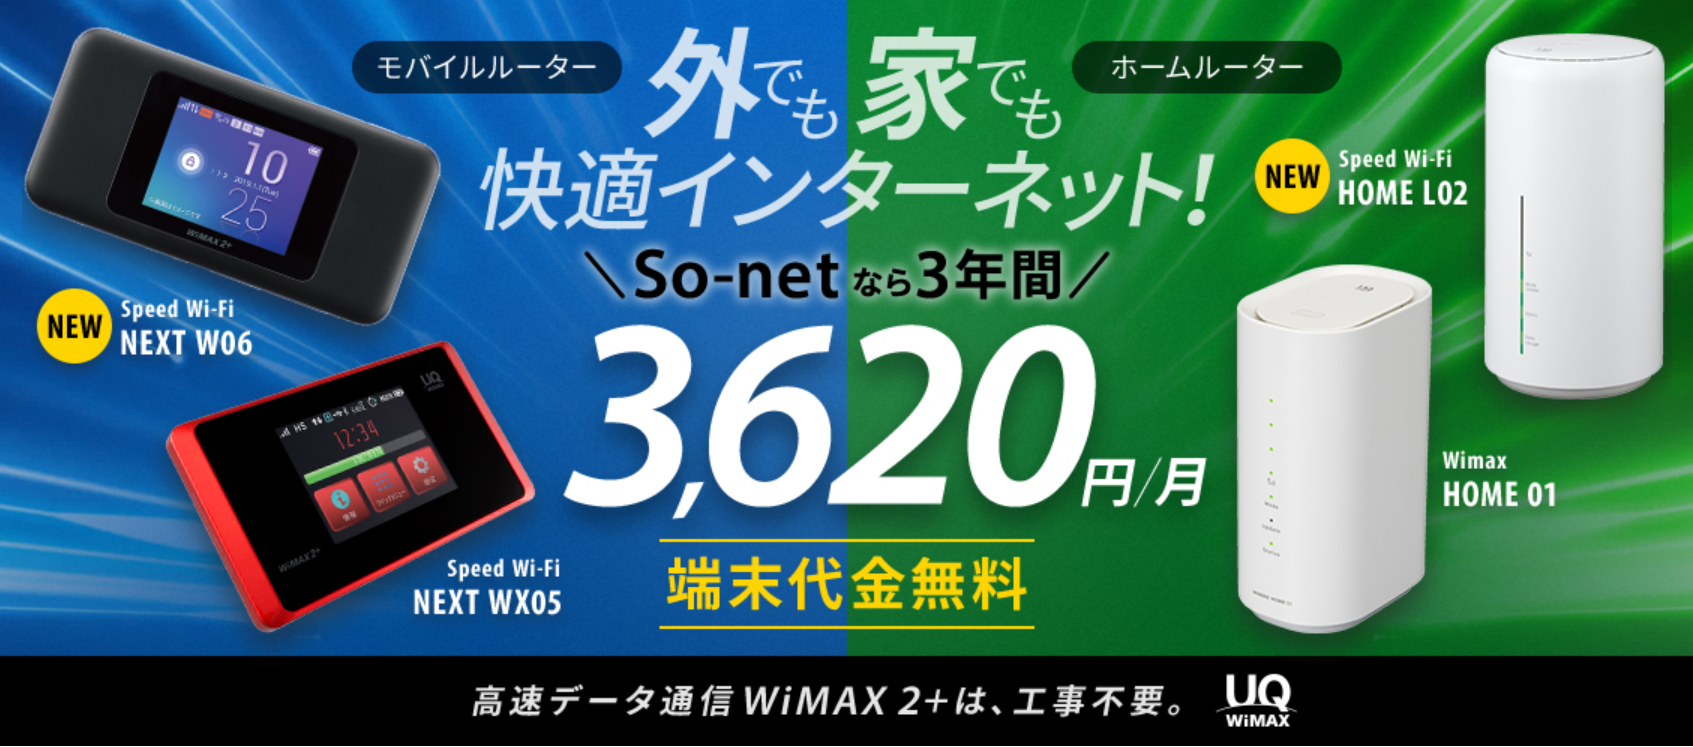 So-net モバイル WiMAX 2+のキャンペーン